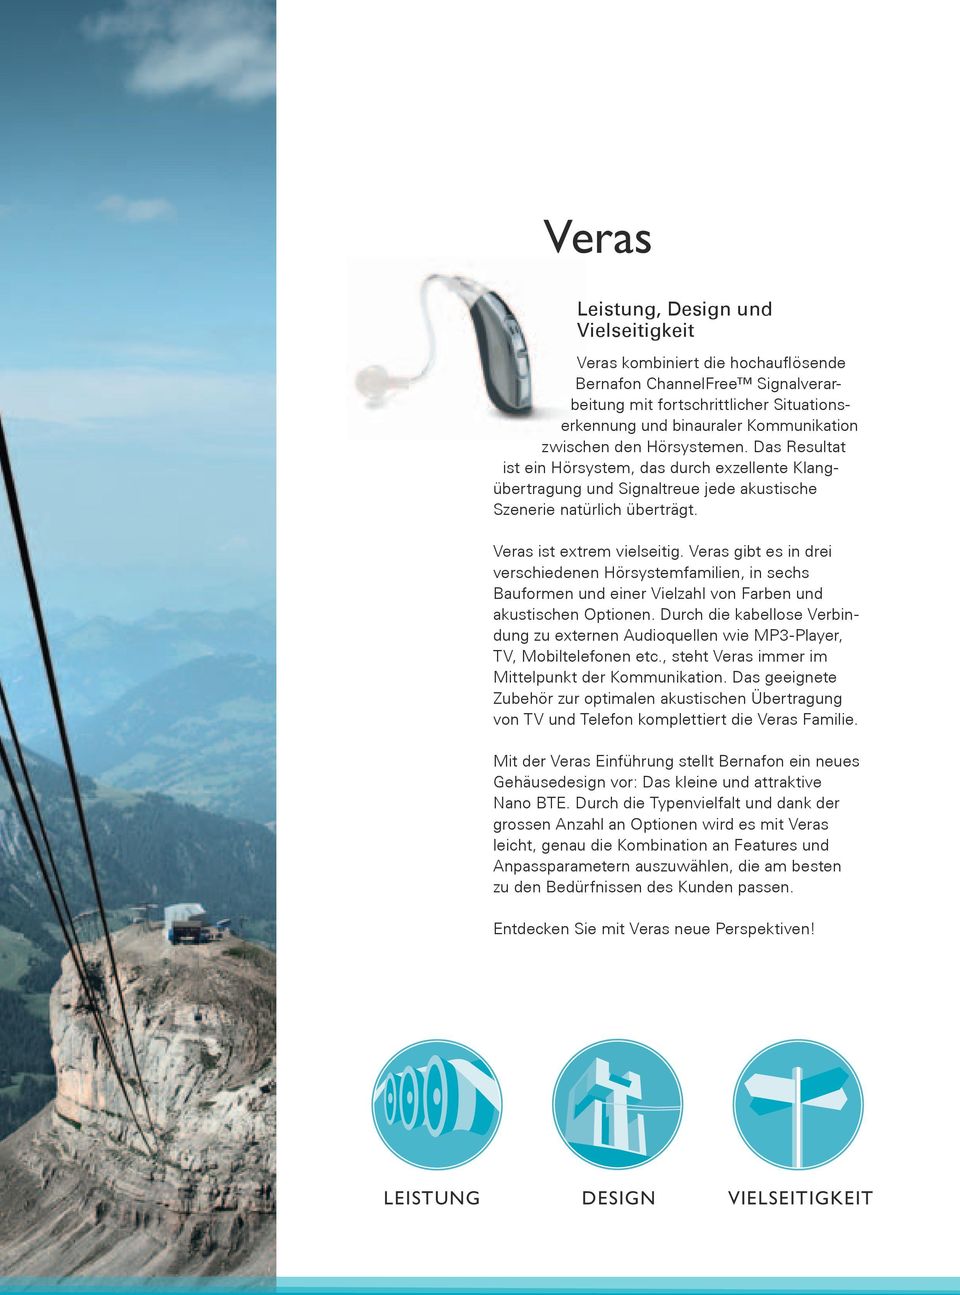 Veras gibt es in drei verschiedenen Hörsystemfamilien, in sechs Bauformen und einer Vielzahl von Farben und akustischen Optionen.